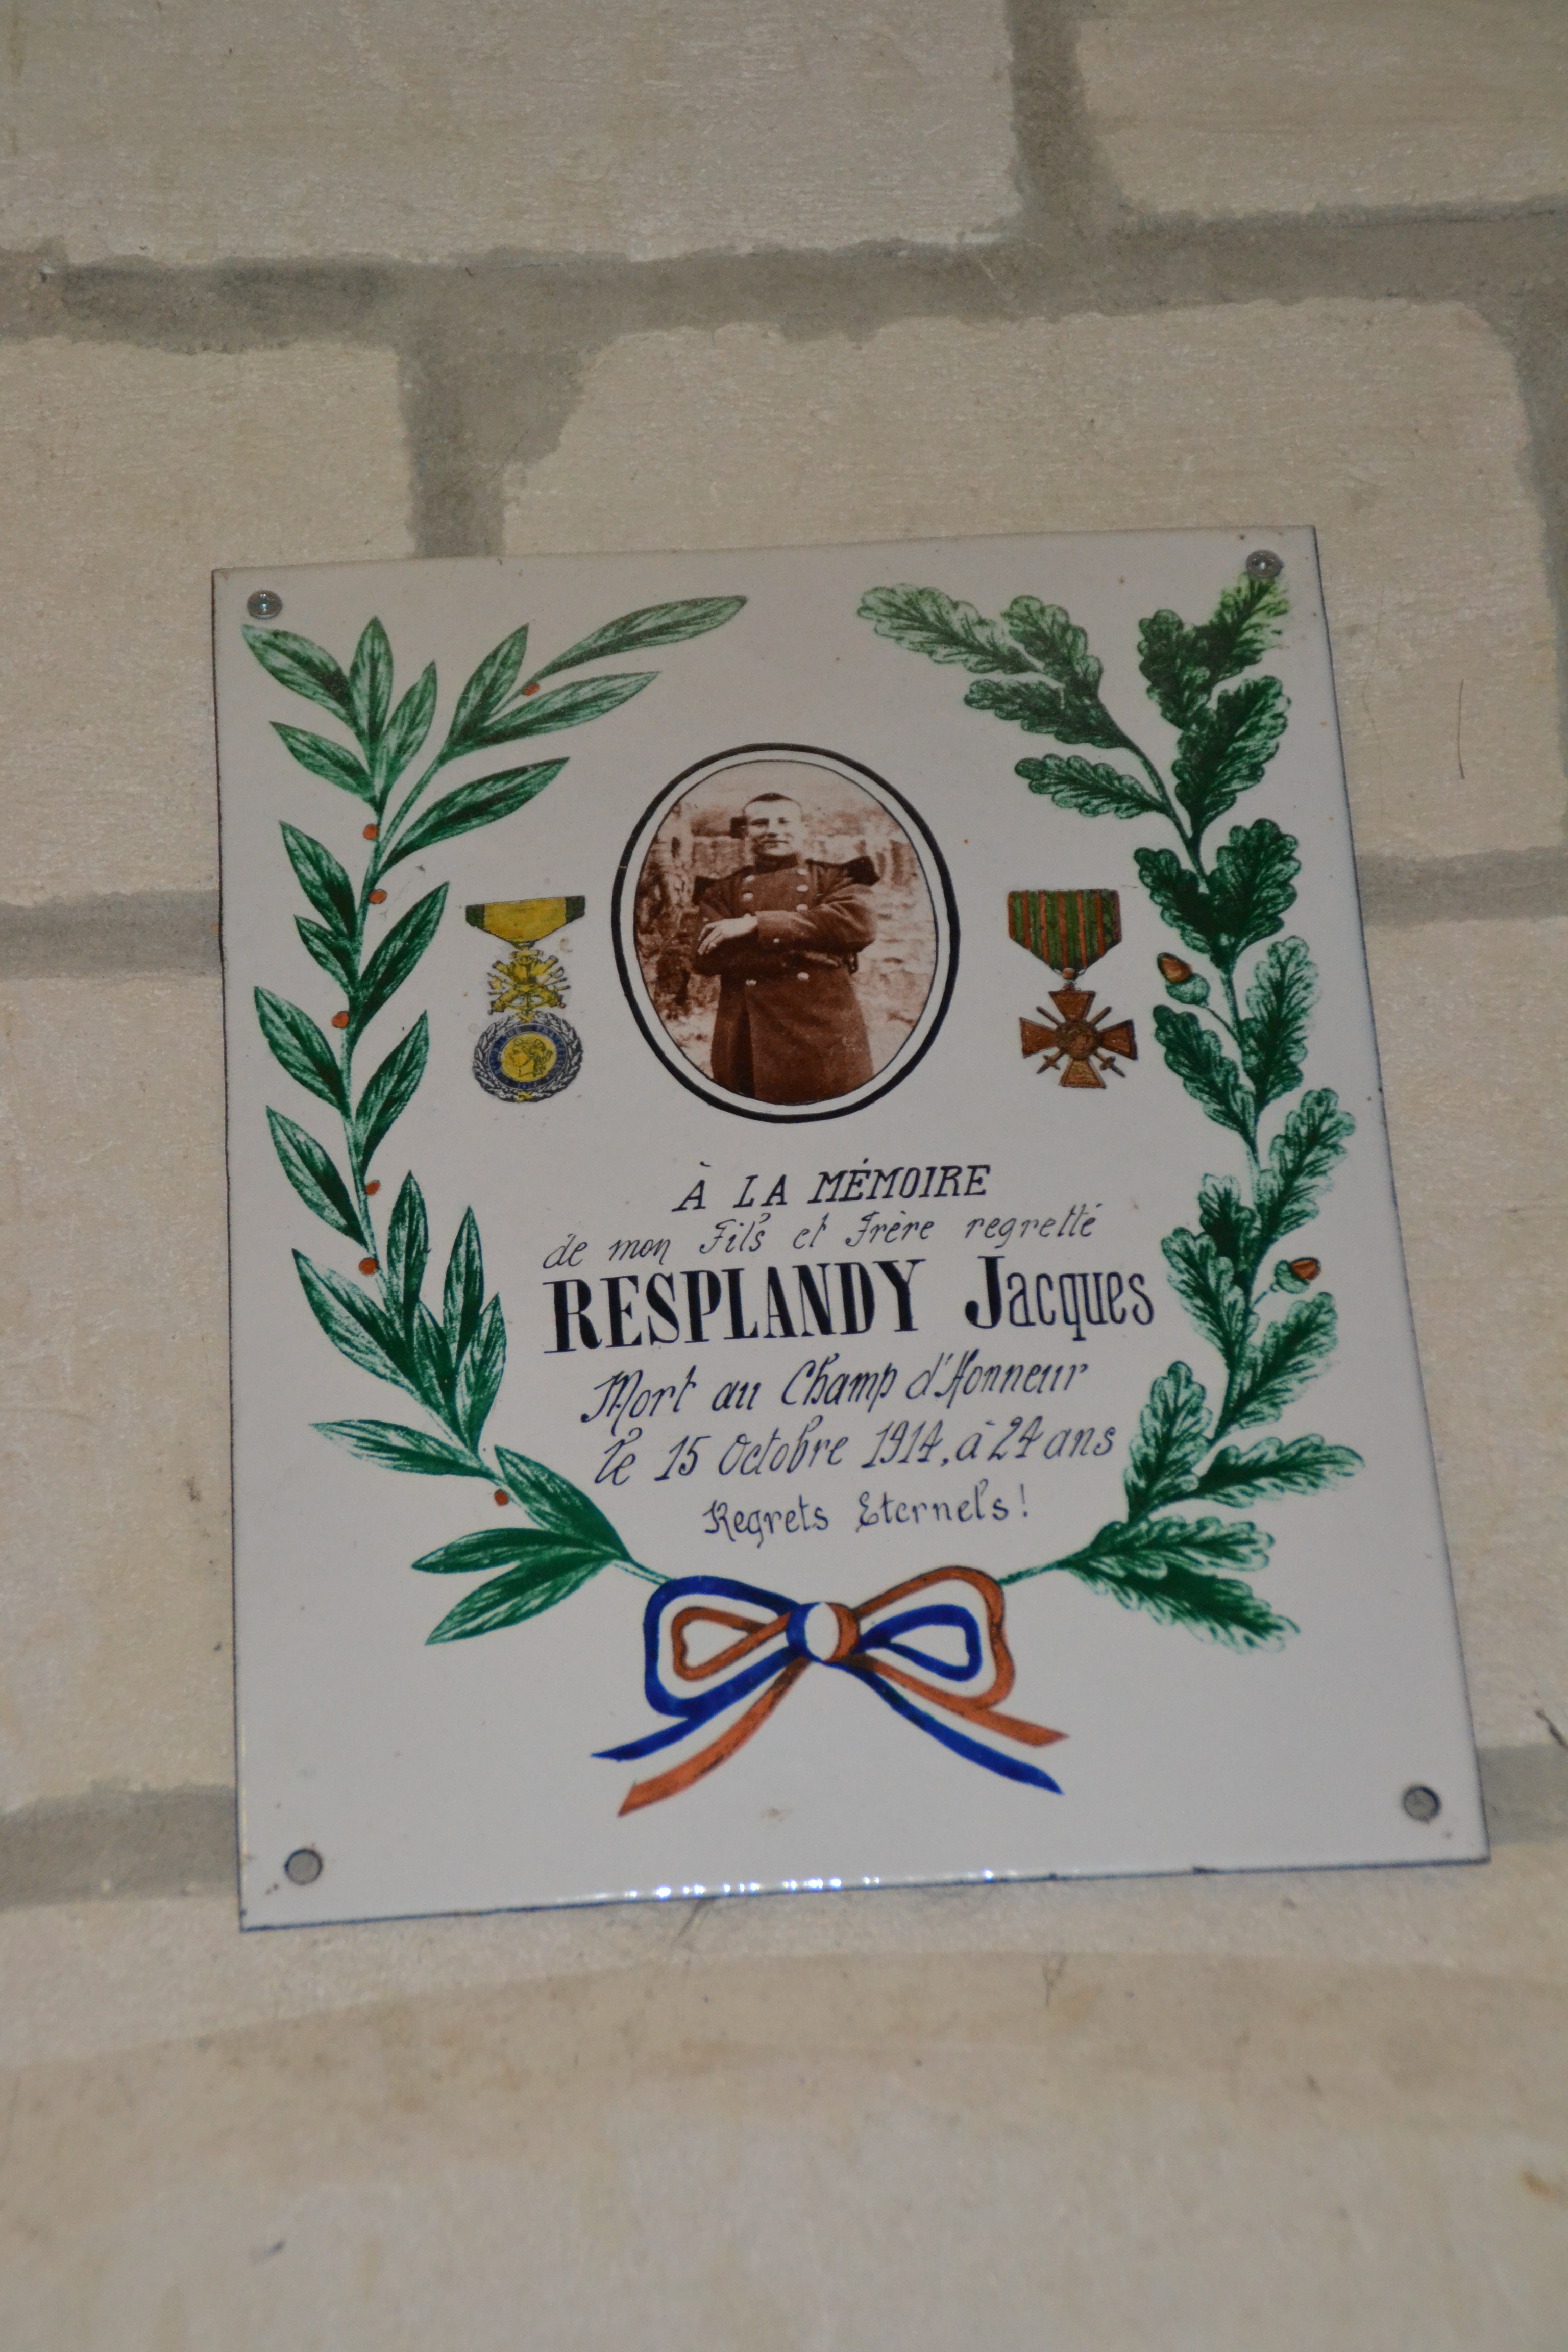 Resplandy Jacques, plaque dans la Chapelle de Cerny en Laonnois